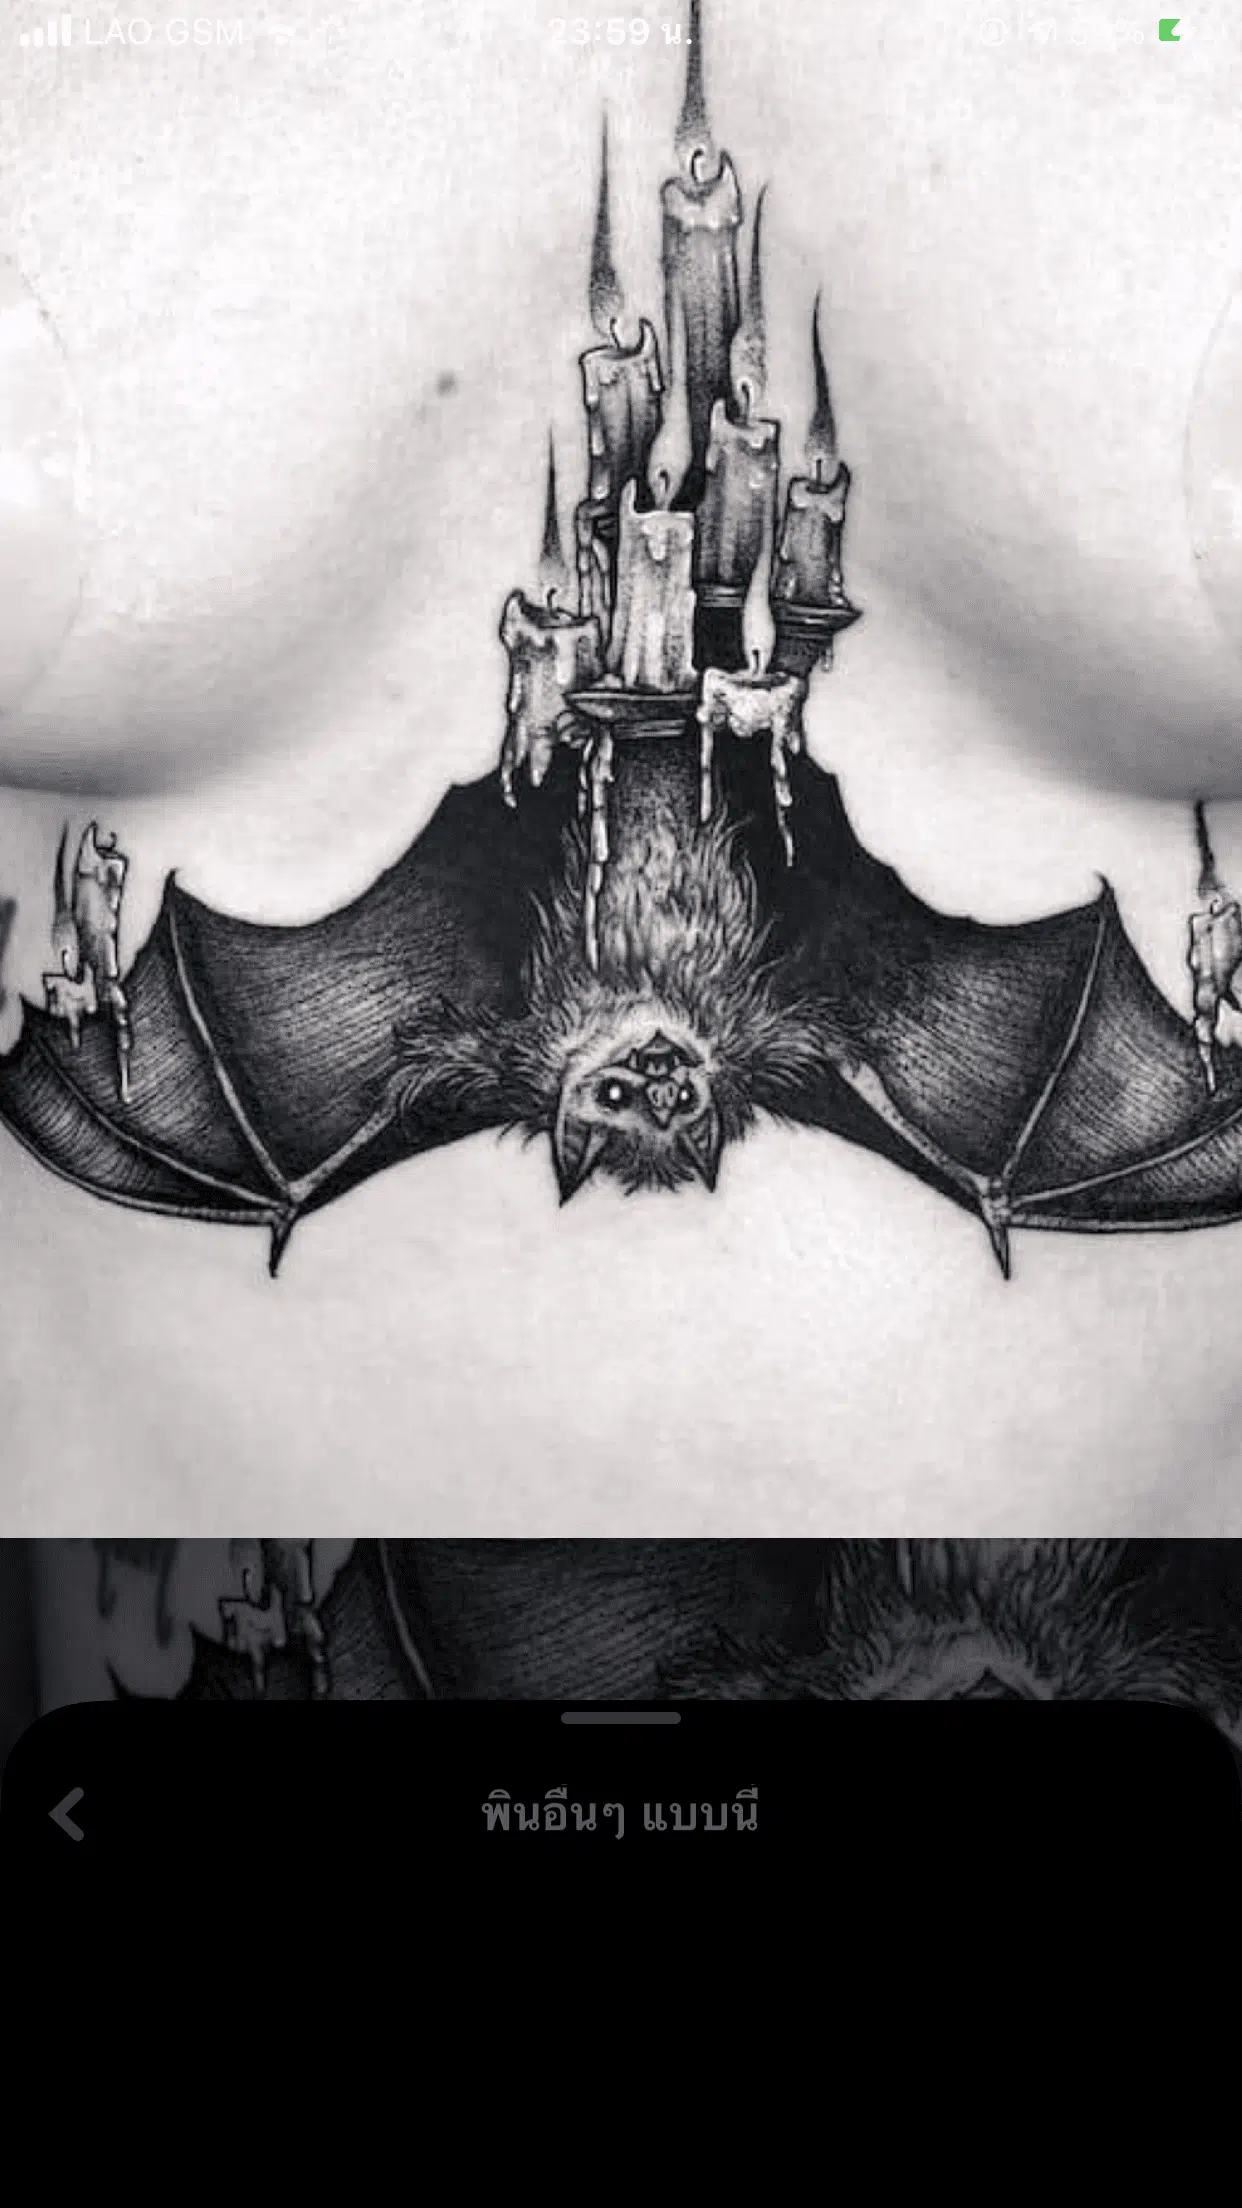 Vampire bat tattoo